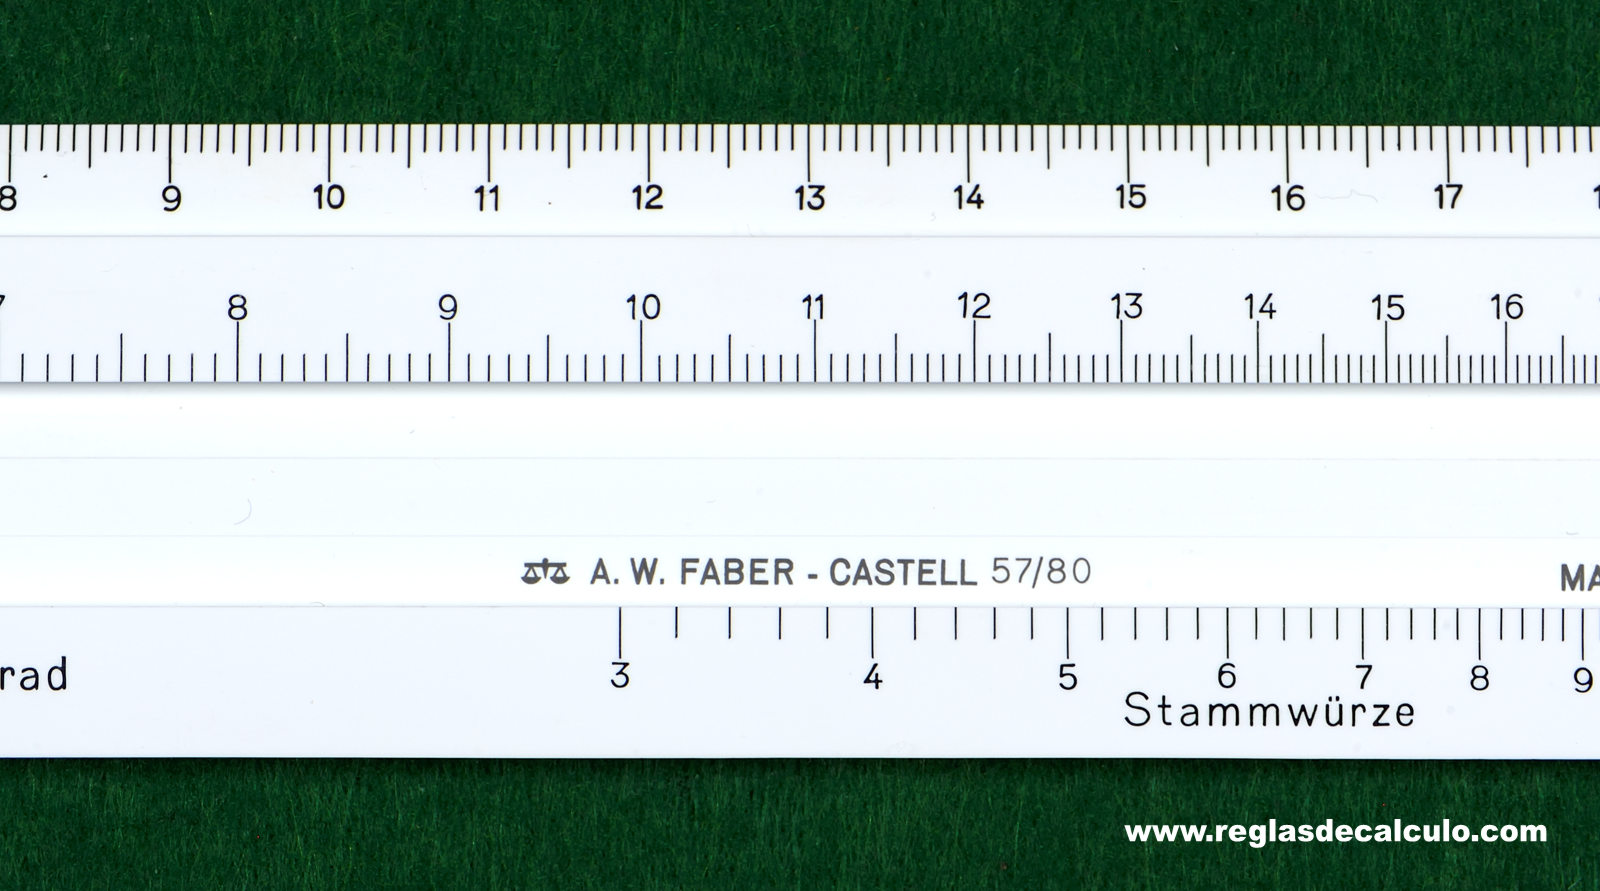 Regla de Calculo Slide rule Faber Castell 57/80